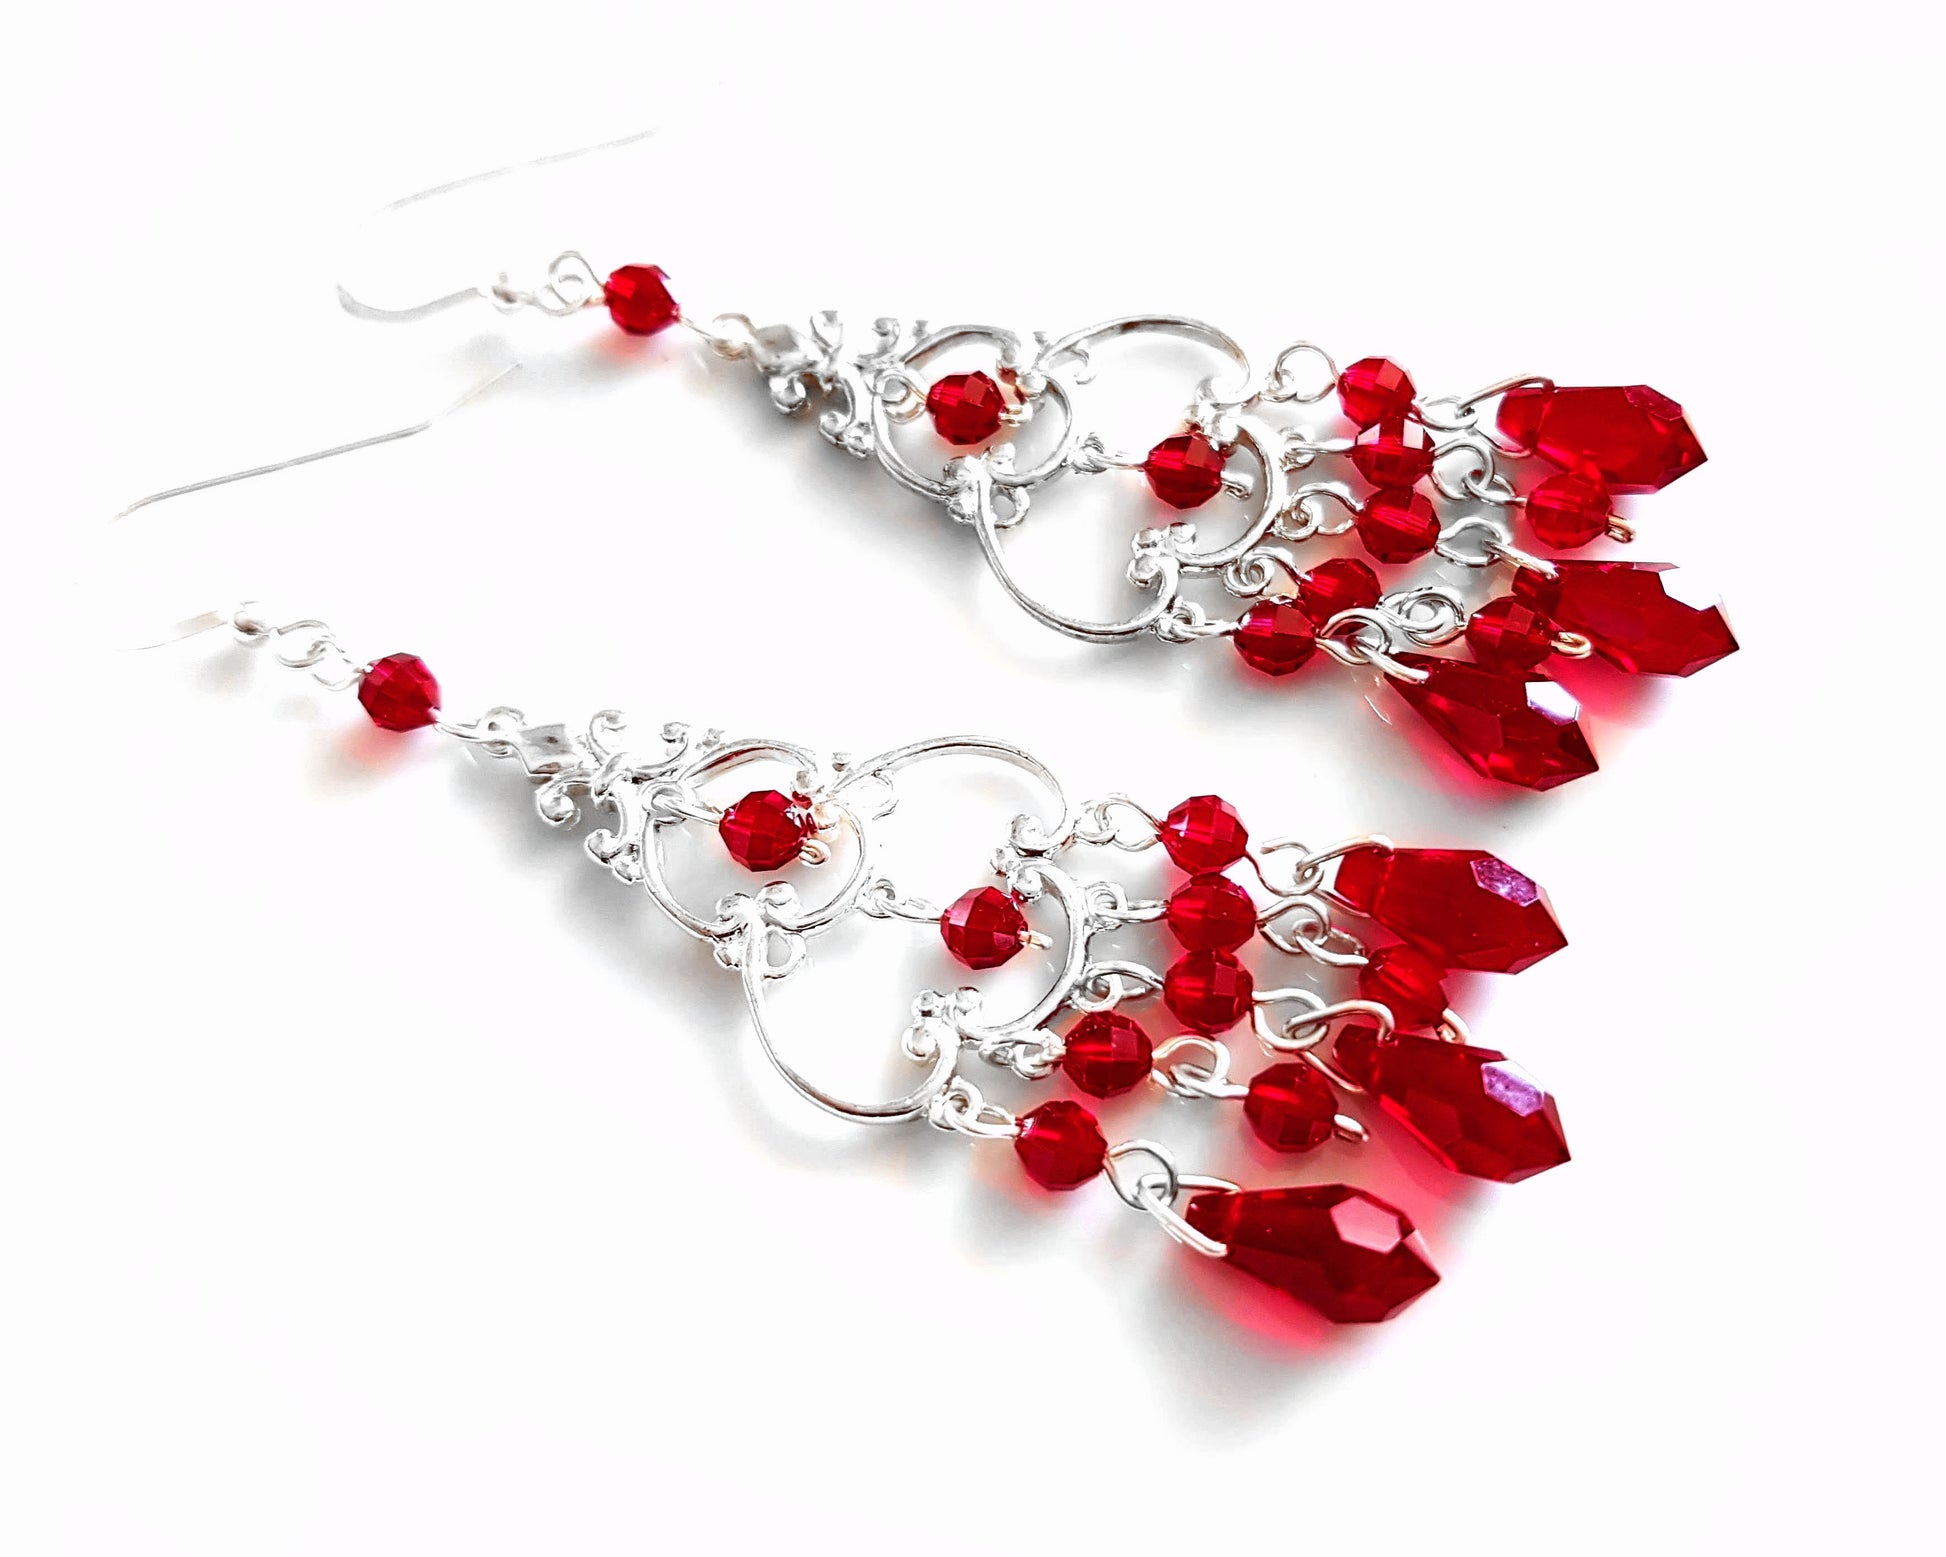 Long Siam Ruby Red Crystal Chandelier Earrings, Sterling Silver and Siam Ruby Red Crystal